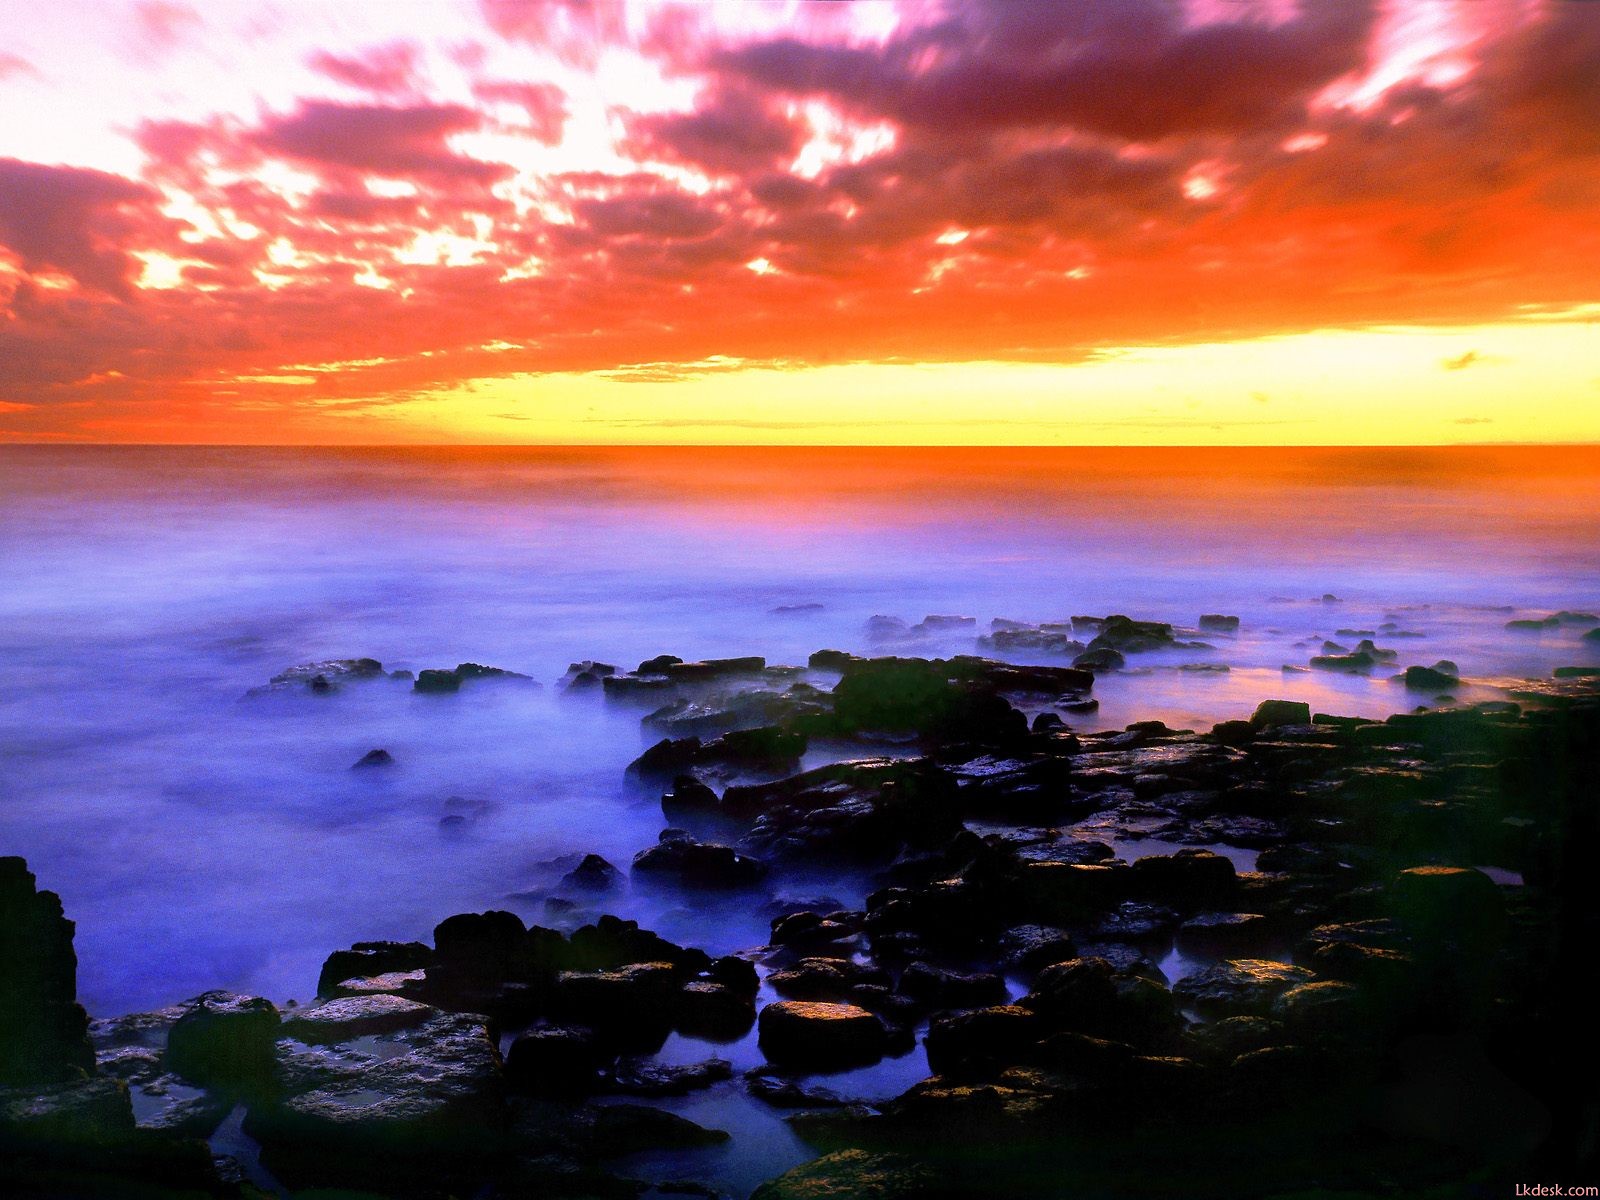 图片素材 : 夏威夷, 日落, 大气层, 白天, 照片, 生态区, 余辉, 性质, 黄昏, 橙子, 流体, 阳光, 红色天空在早晨, 琥珀色, 水体, 日出, 积云, 地平线, 大气现象 ...